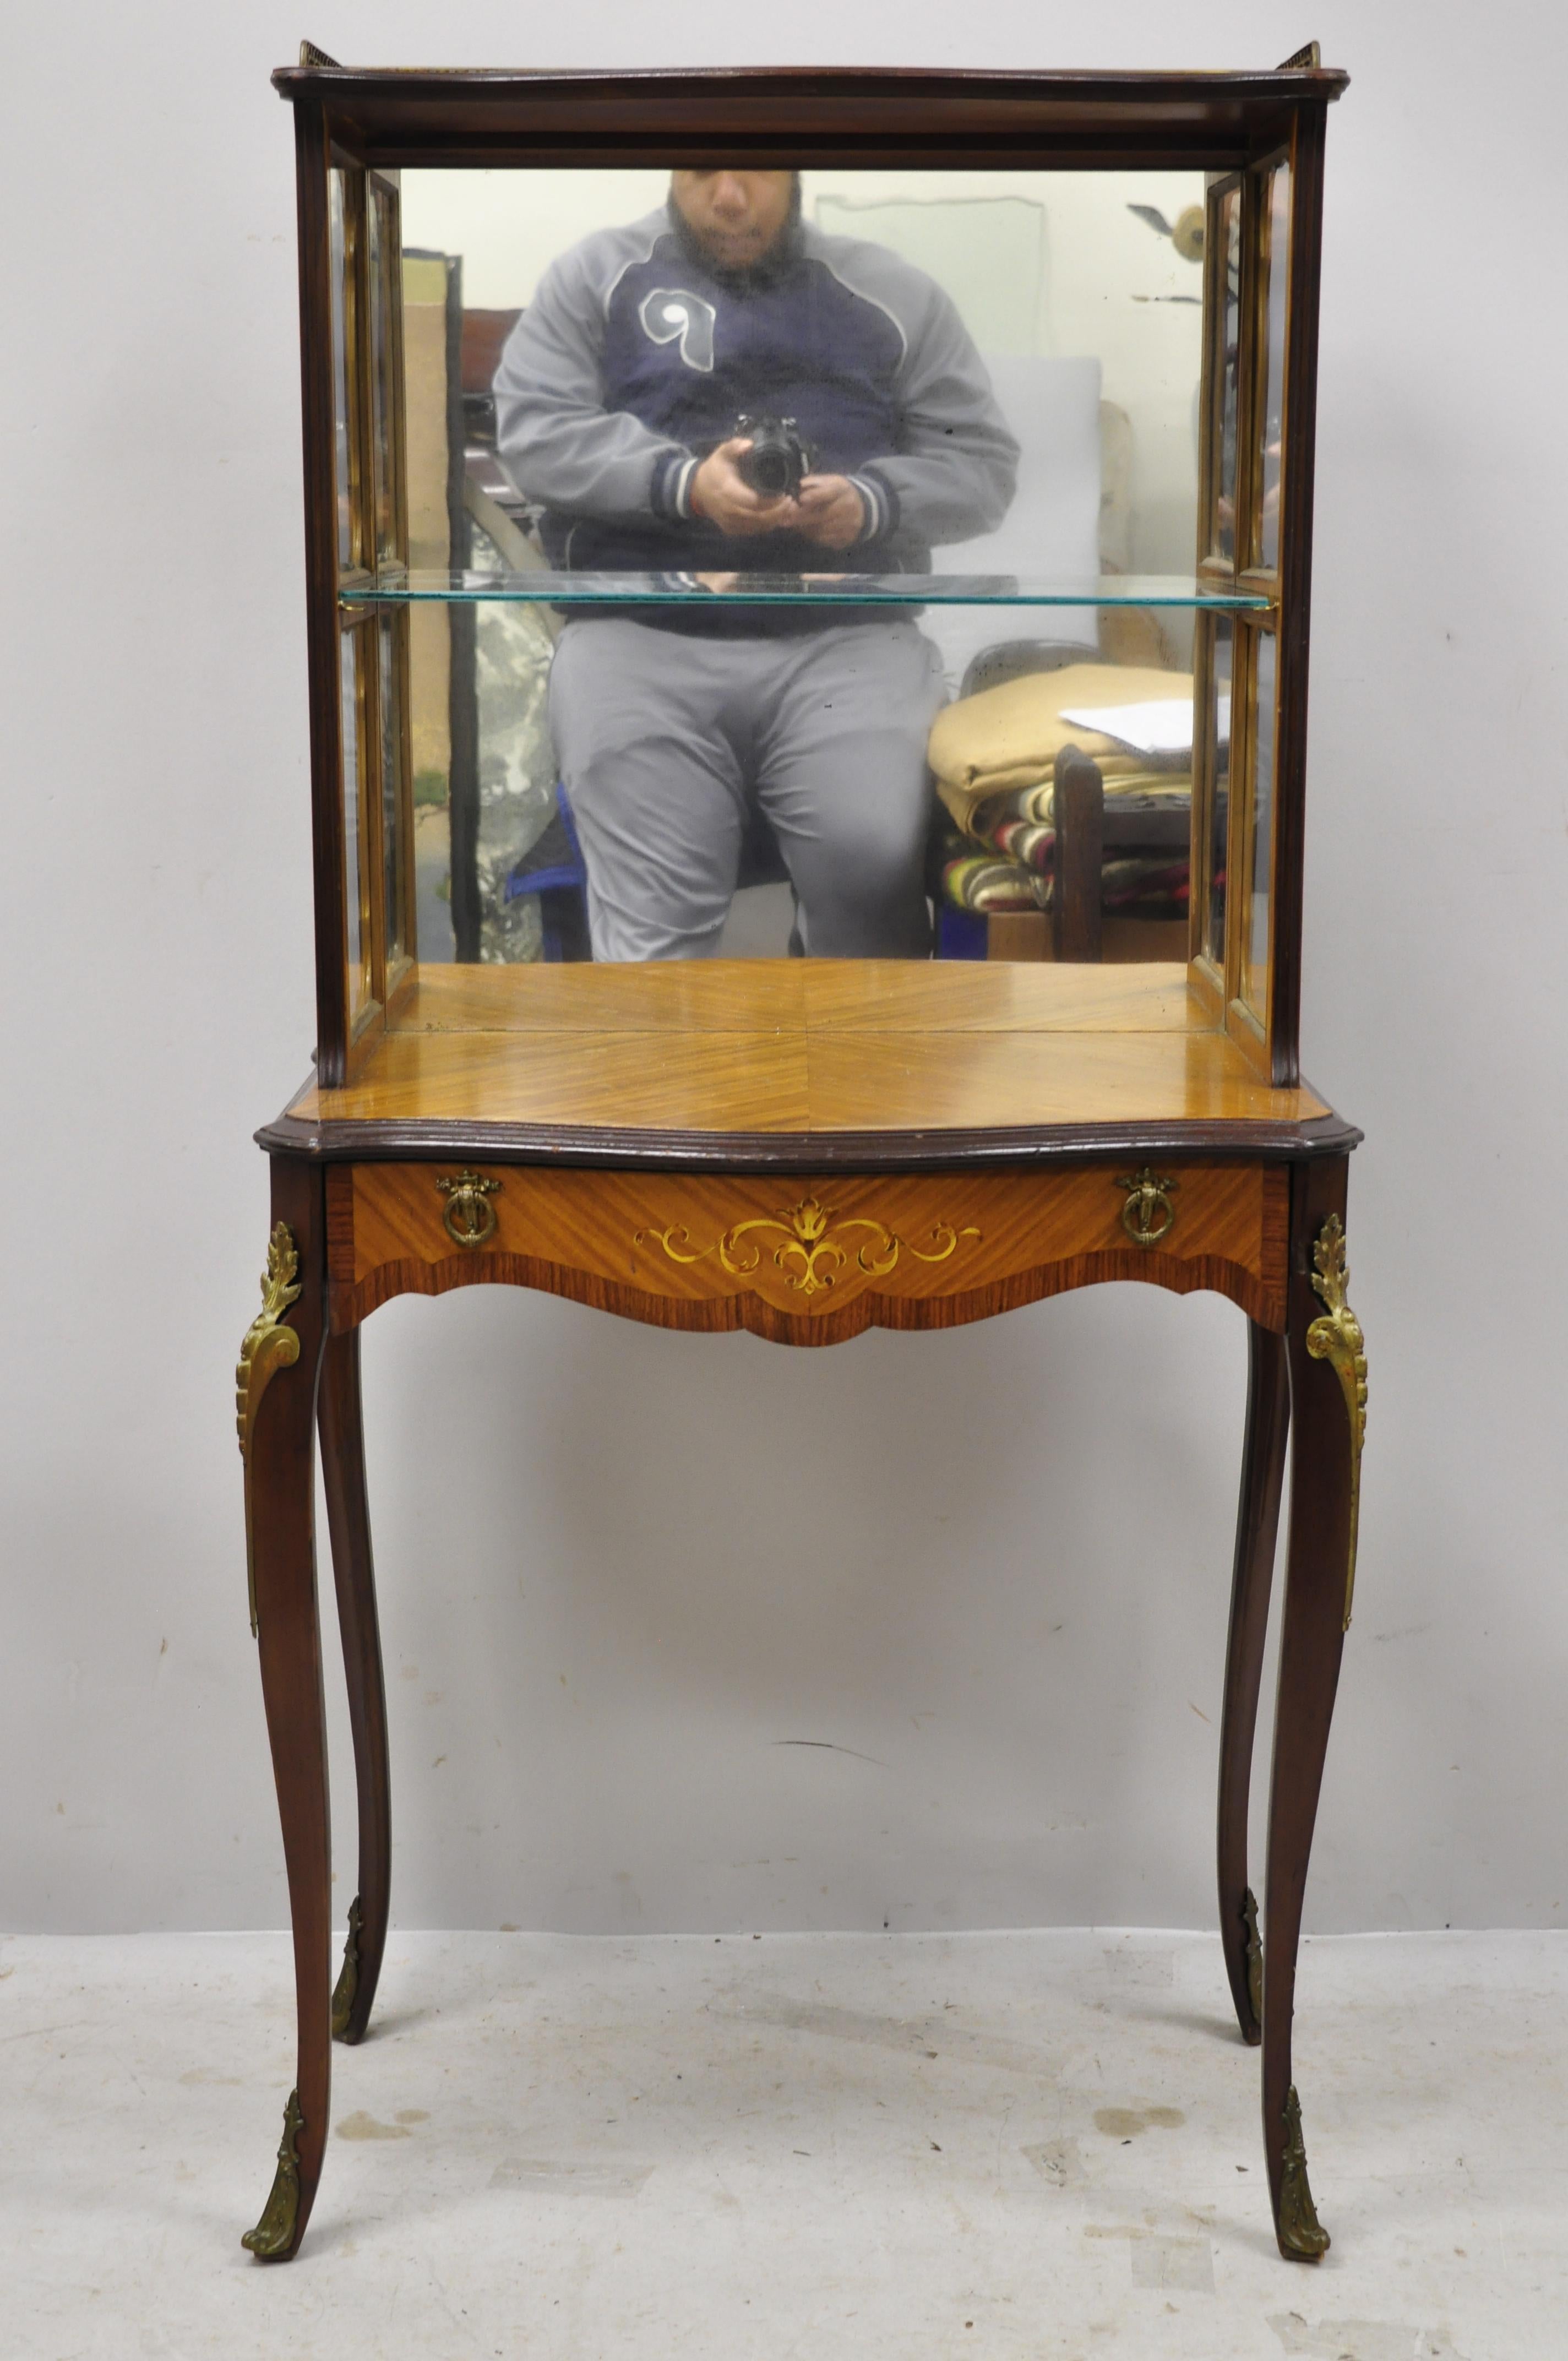 Petite étagère Louis XV ancienne avec incrustation de bois satiné et un tiroir. Cet objet présente un dos en miroir, bronze doré, incrustation de bois satiné, belle petite taille, forme impressionnante, 1 tiroir, 1 étagère en verre, pieds cabriole,